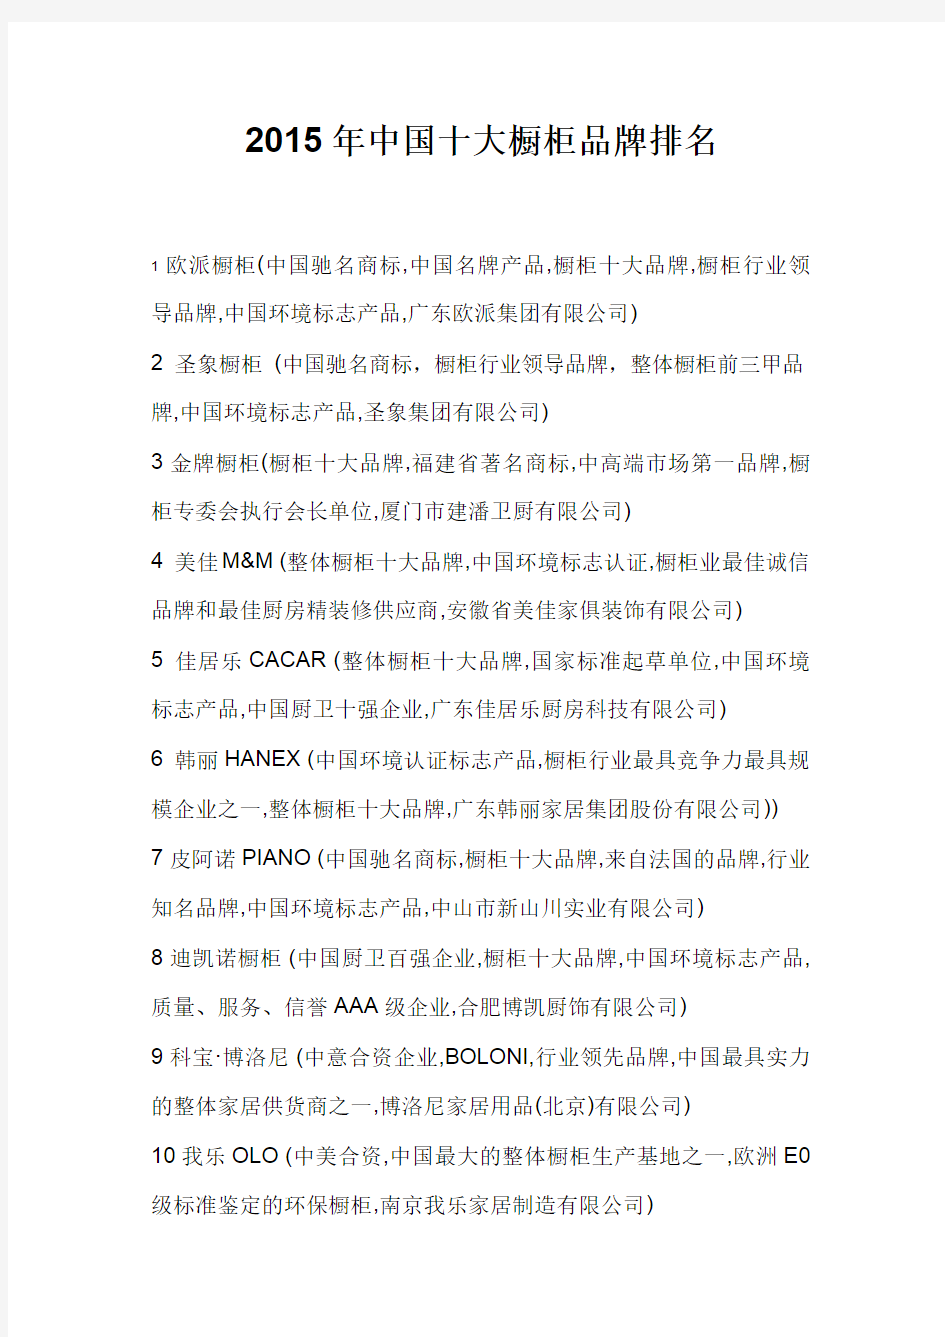 2015年中国十大橱柜品牌排名